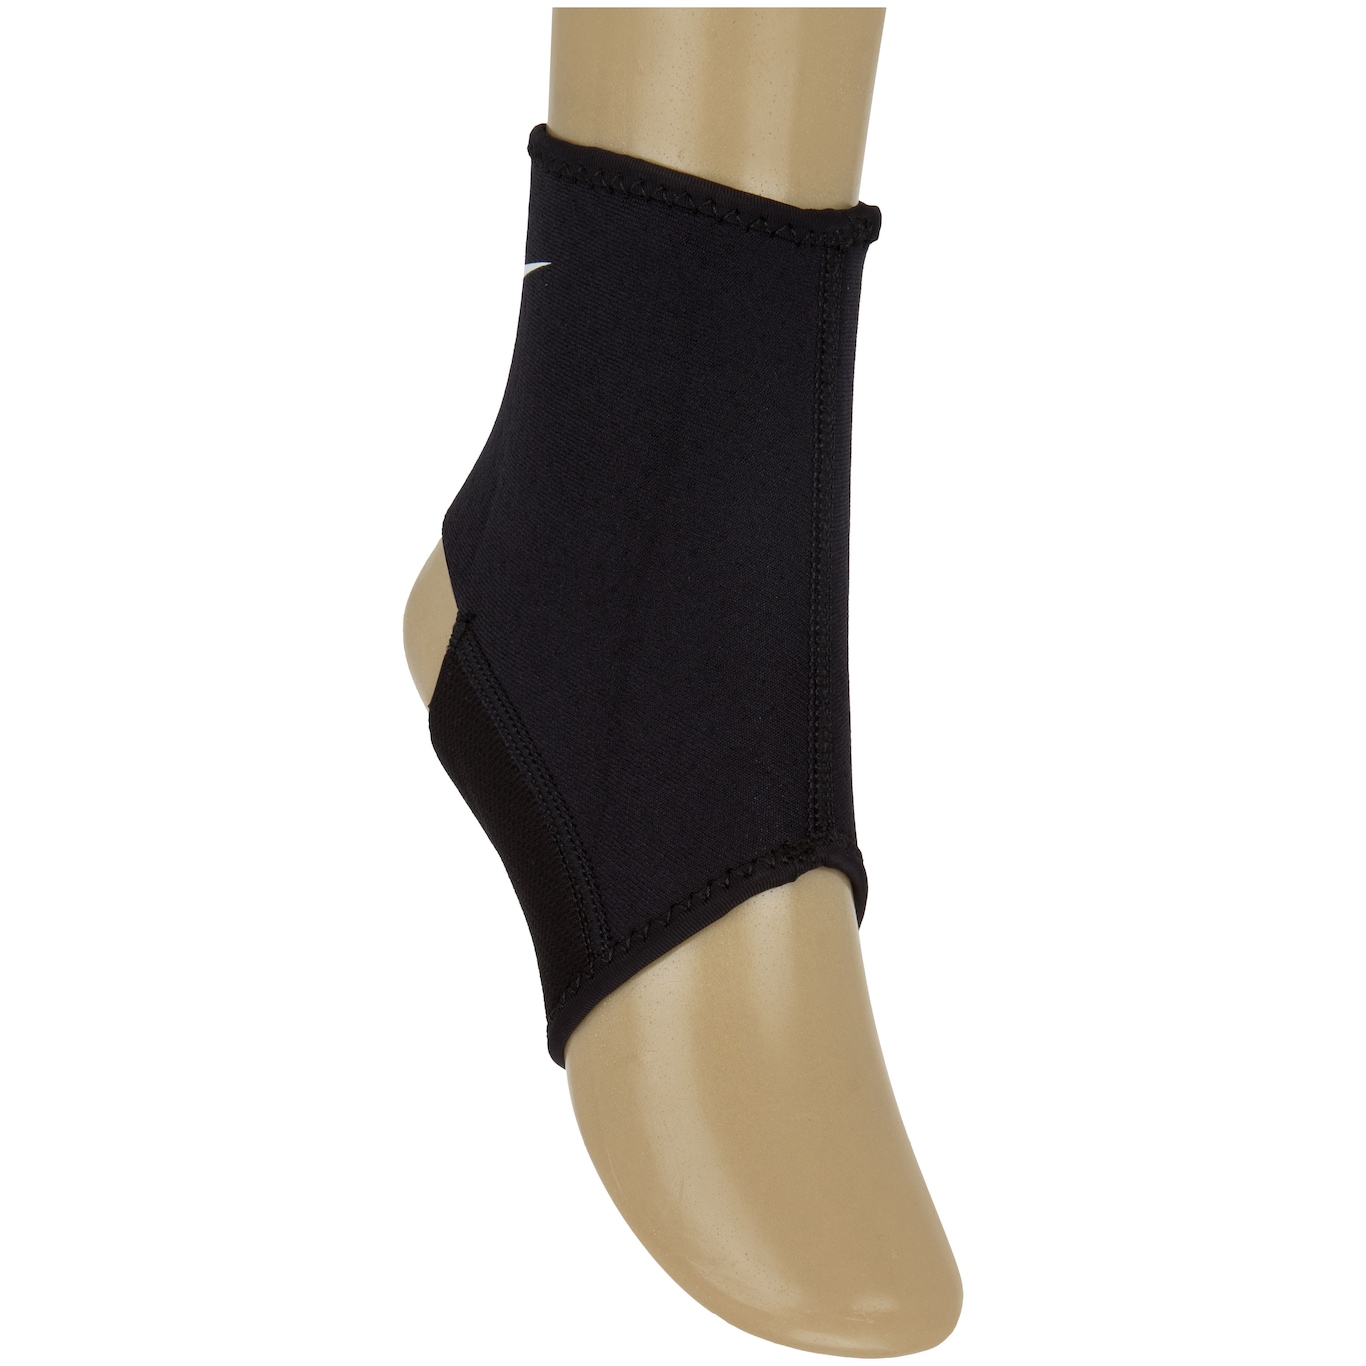 Tornozeleira Nike Pro Ankle Sleeve 2.0 - Adulto